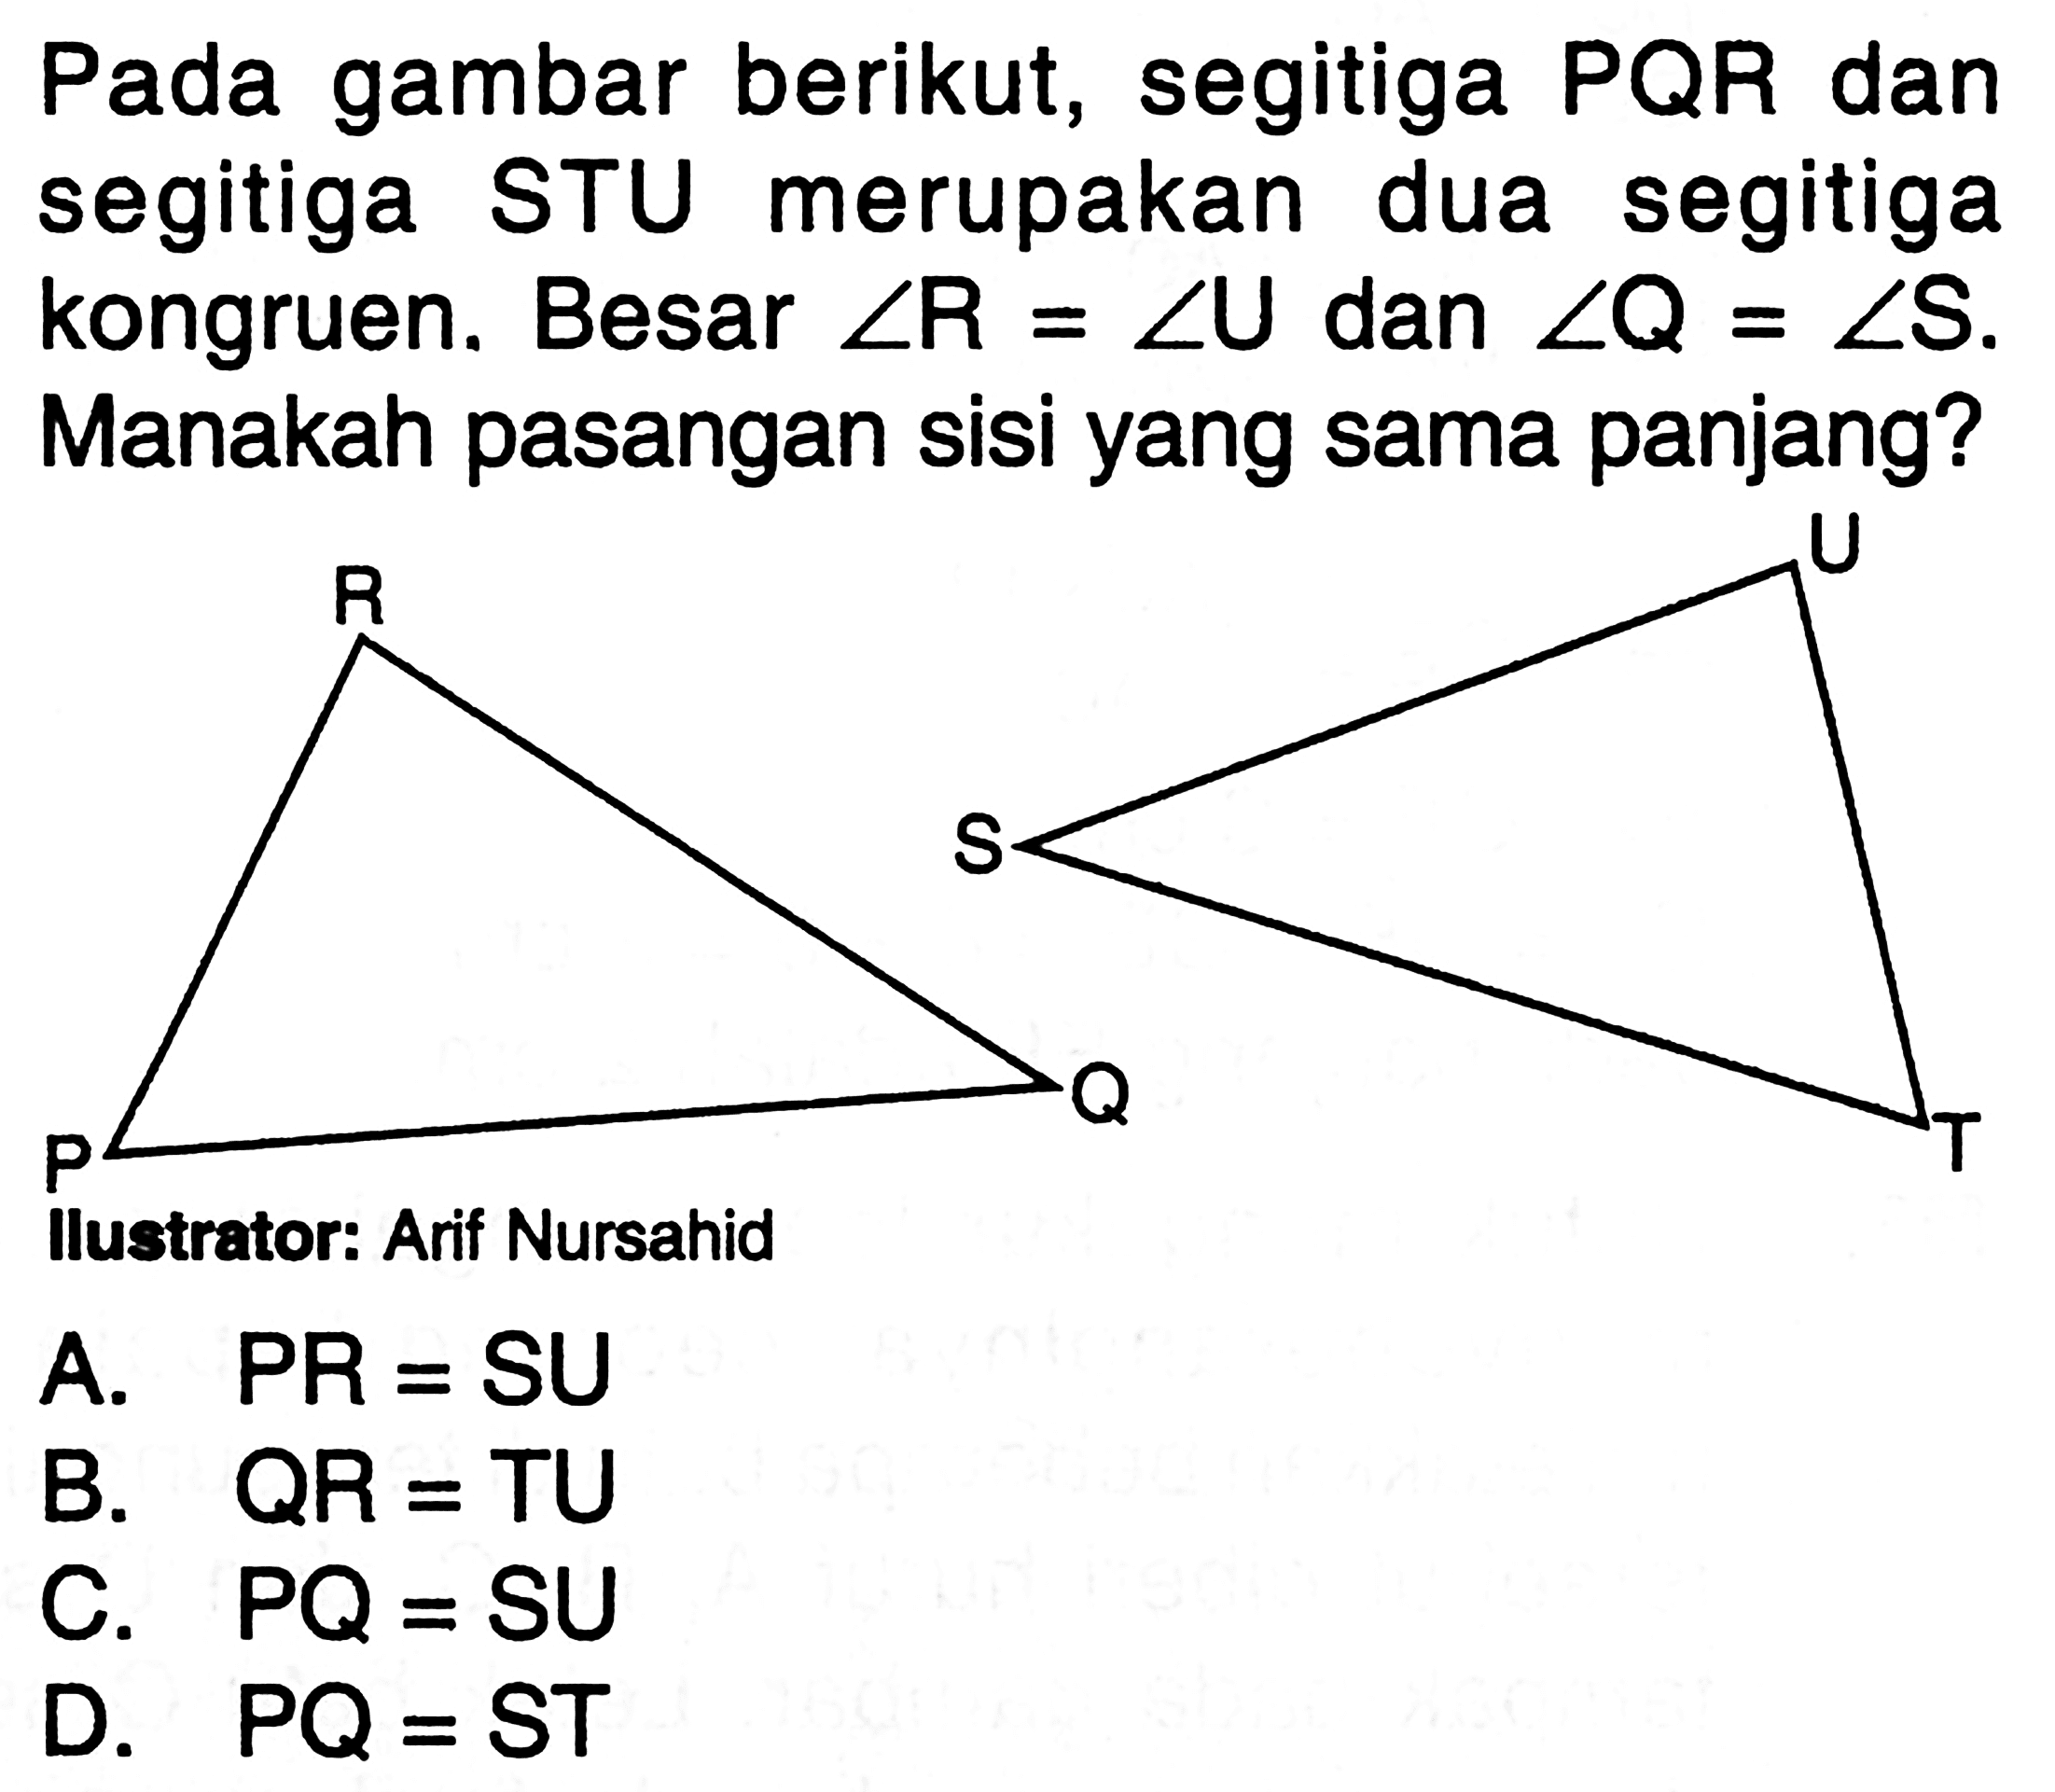 Pada gambar berikut, segitiga PQR dan segitiga STU merupakan dua segitiga kongruen. Besar sudut R=sudut U dan sudut Q=sudut S. Manakah pasangan sisi yang sama panjang?